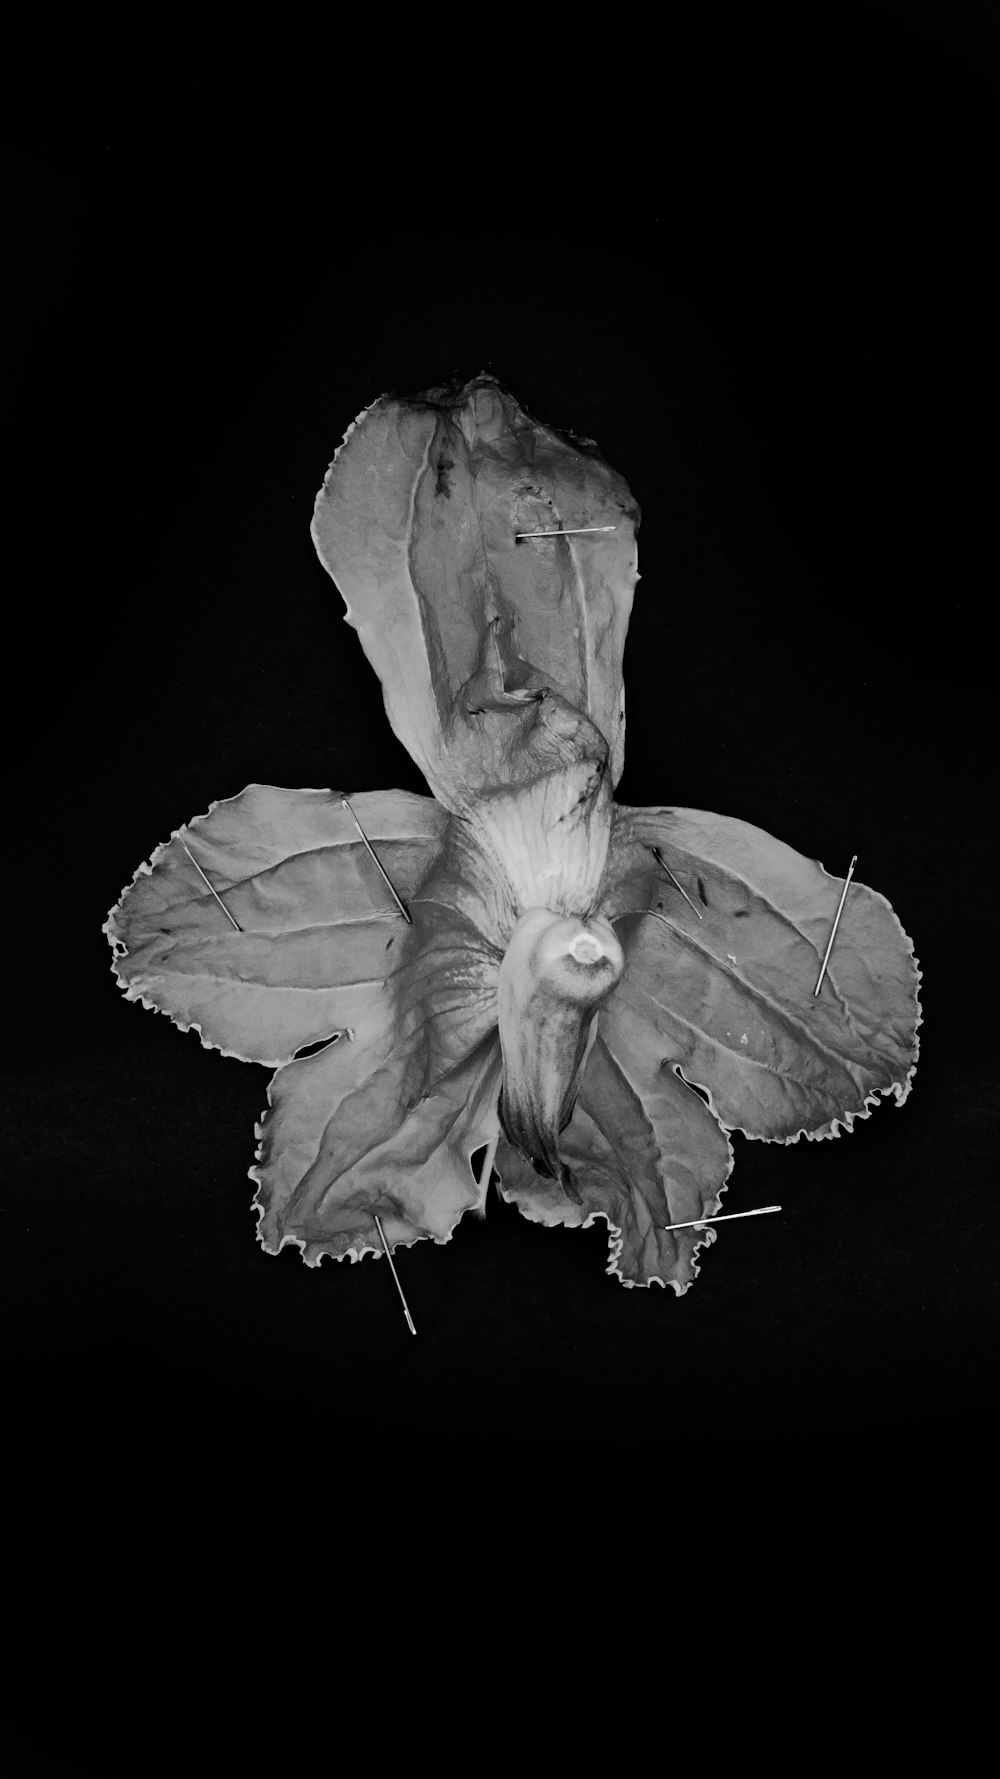 Foto en escala de grises de una flor